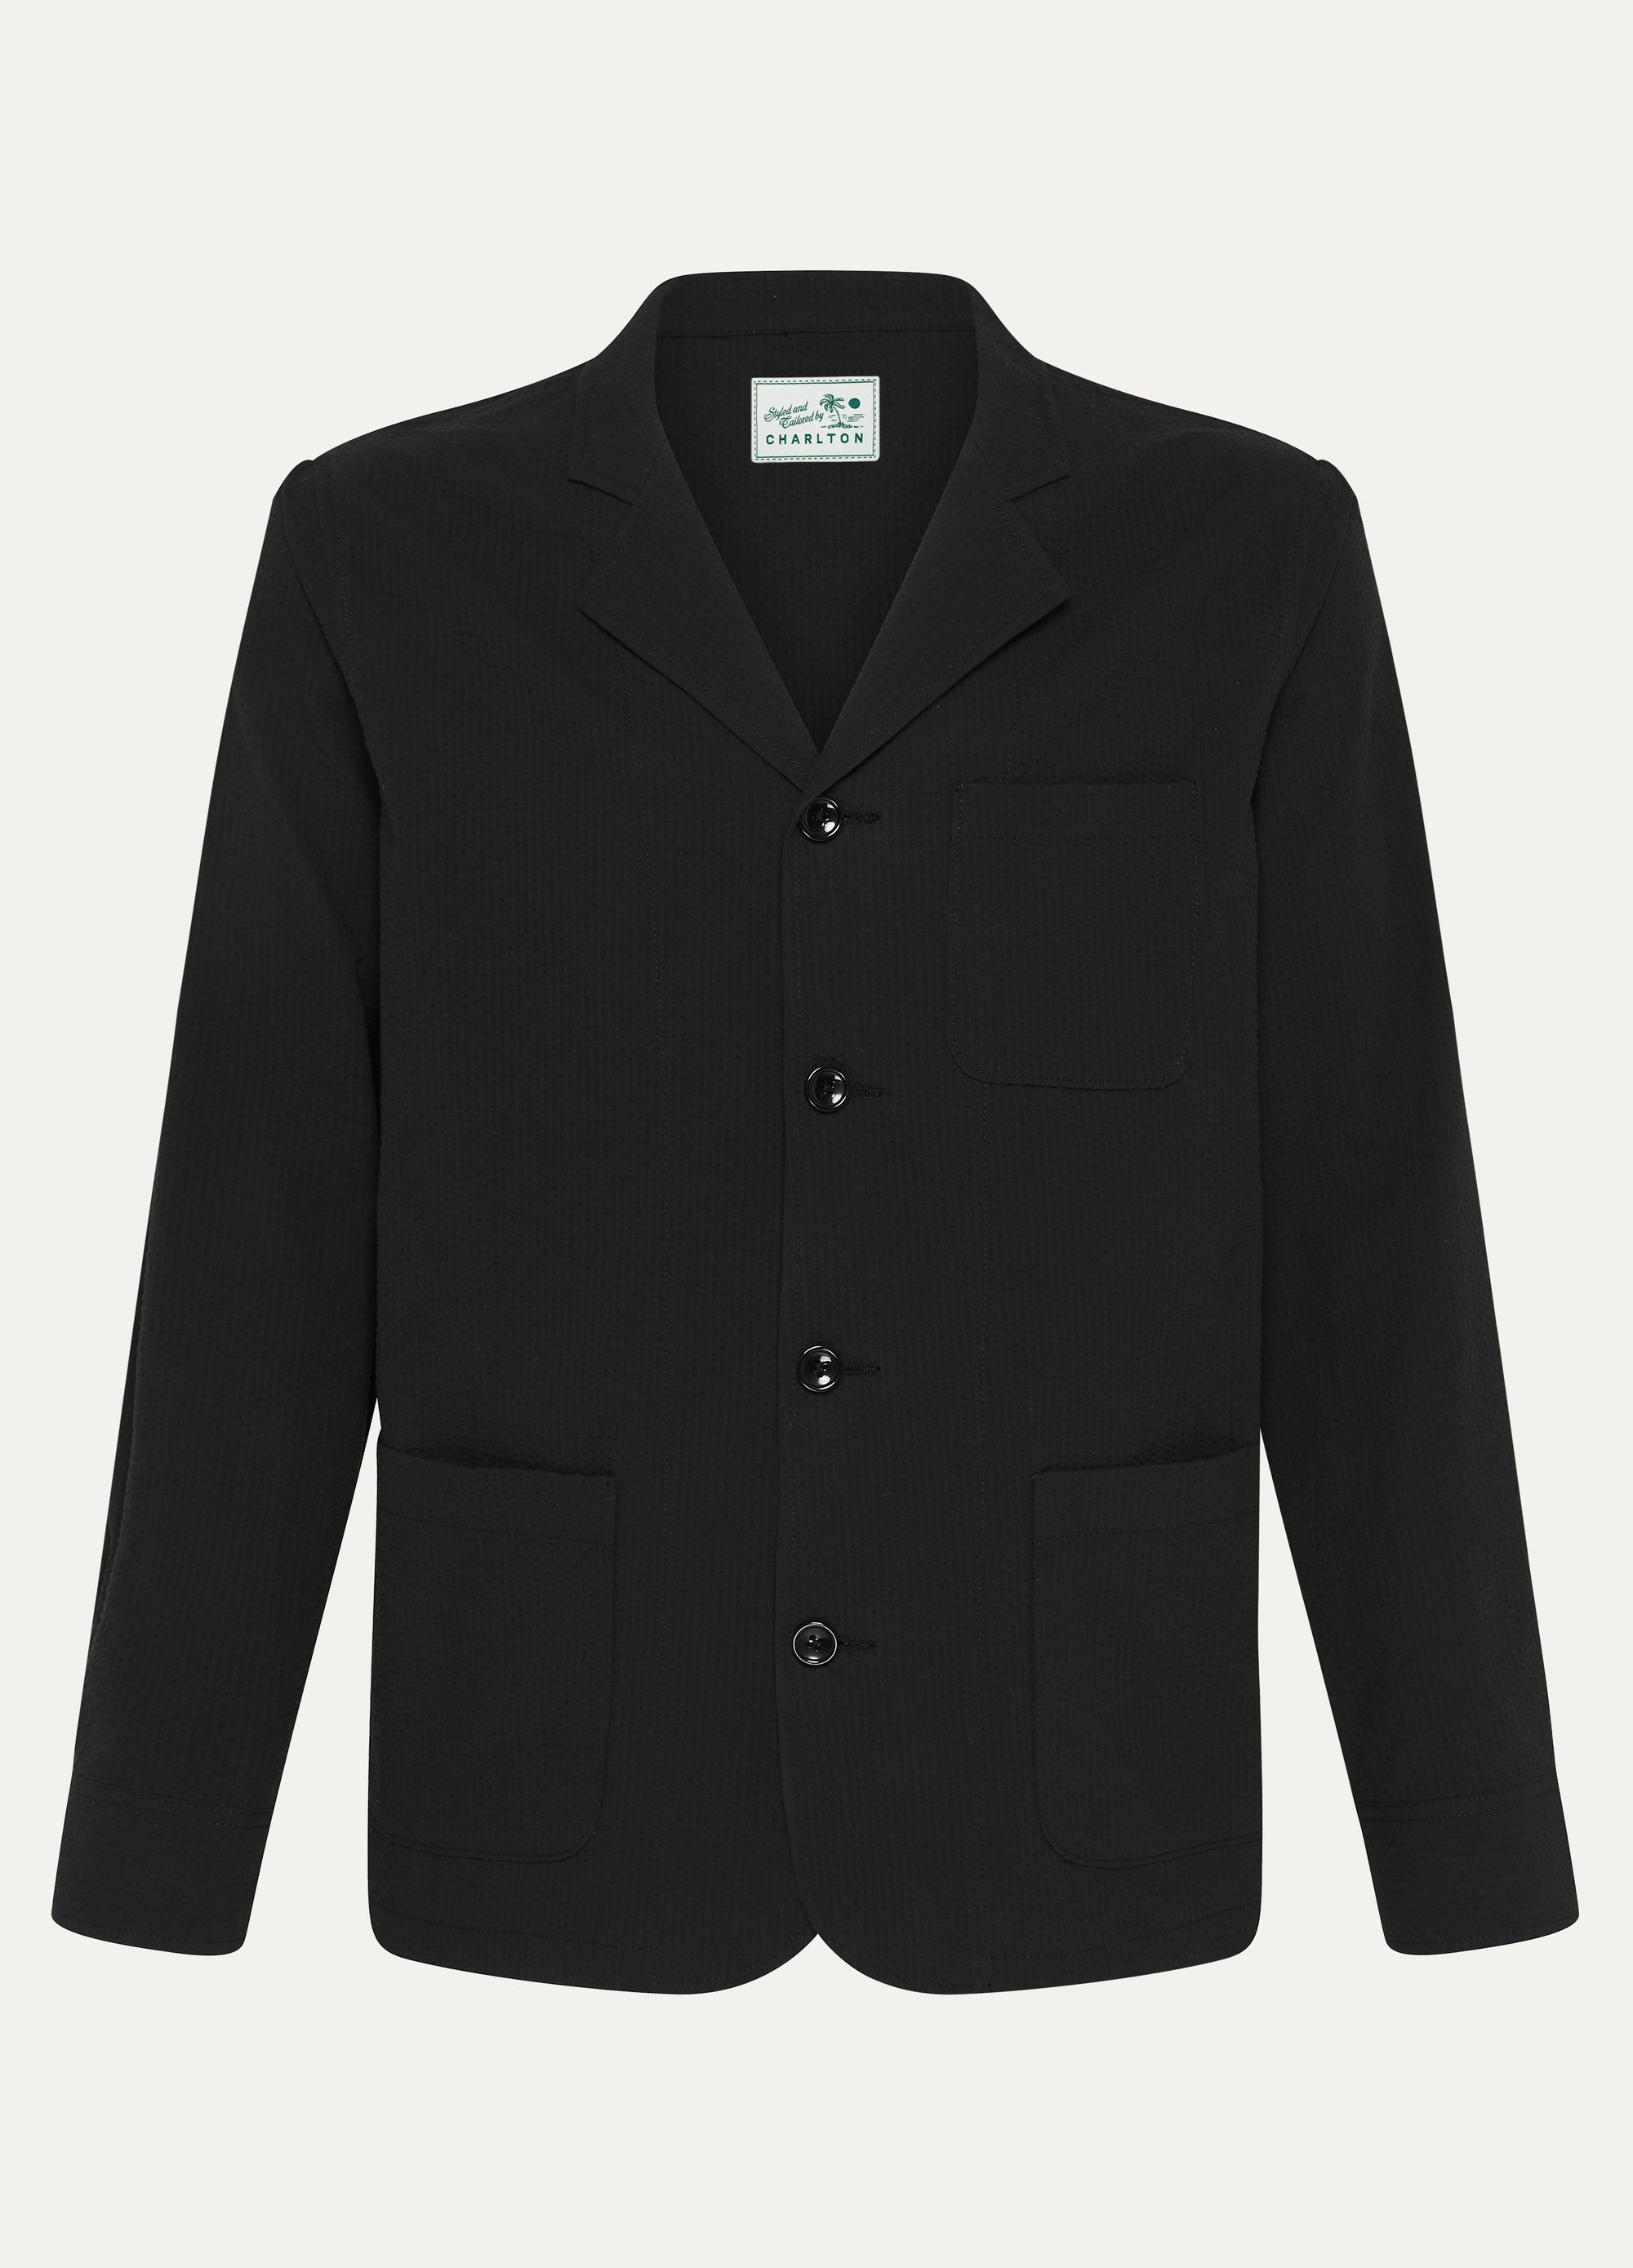 Deconstructed Suit Jacket in Black Seersucker